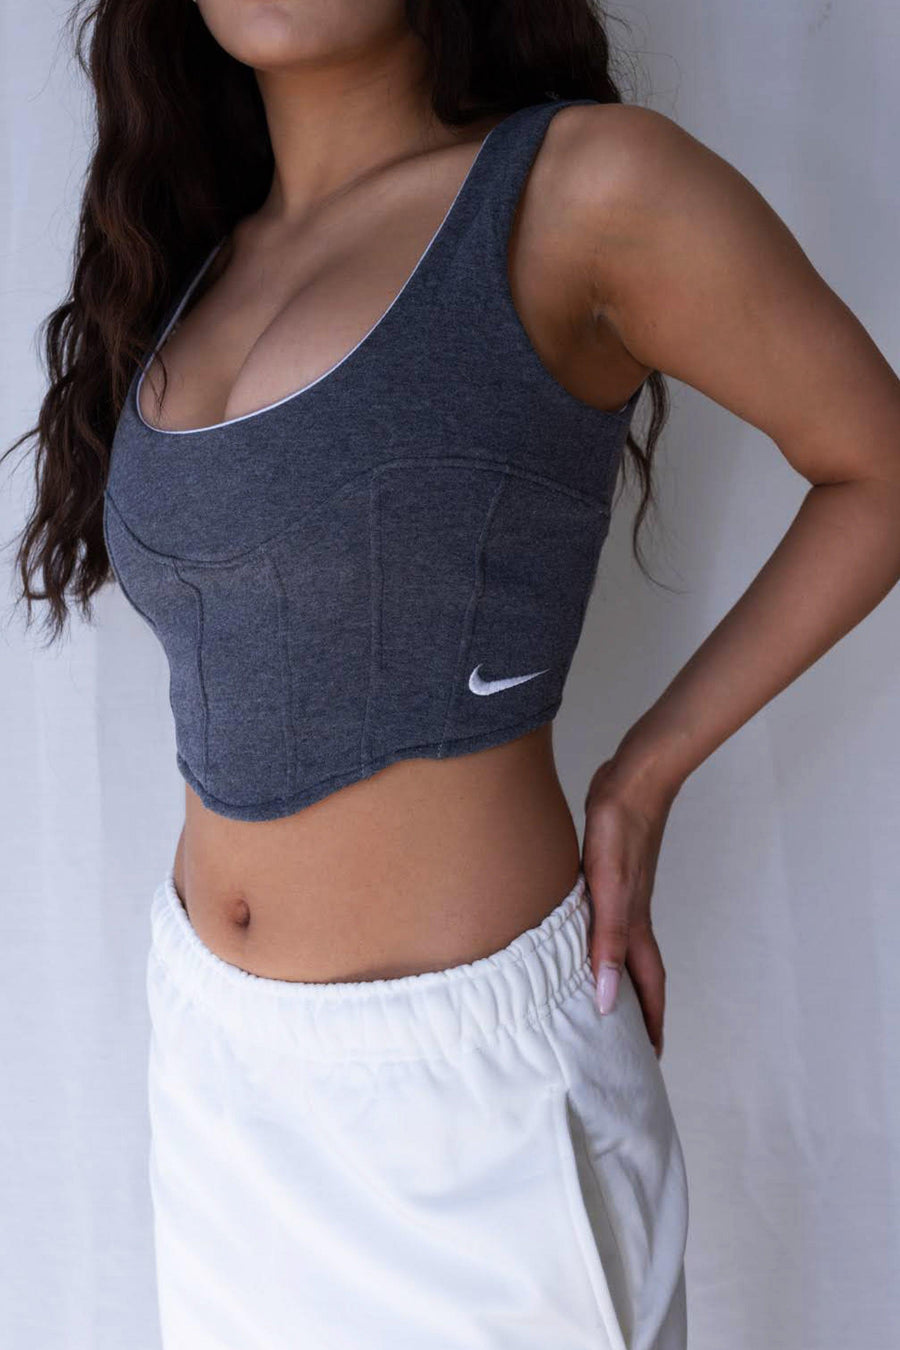 Rework Nike Sweatshirt Bustier - XS, S, M, L, XL, 2XL – Frankie